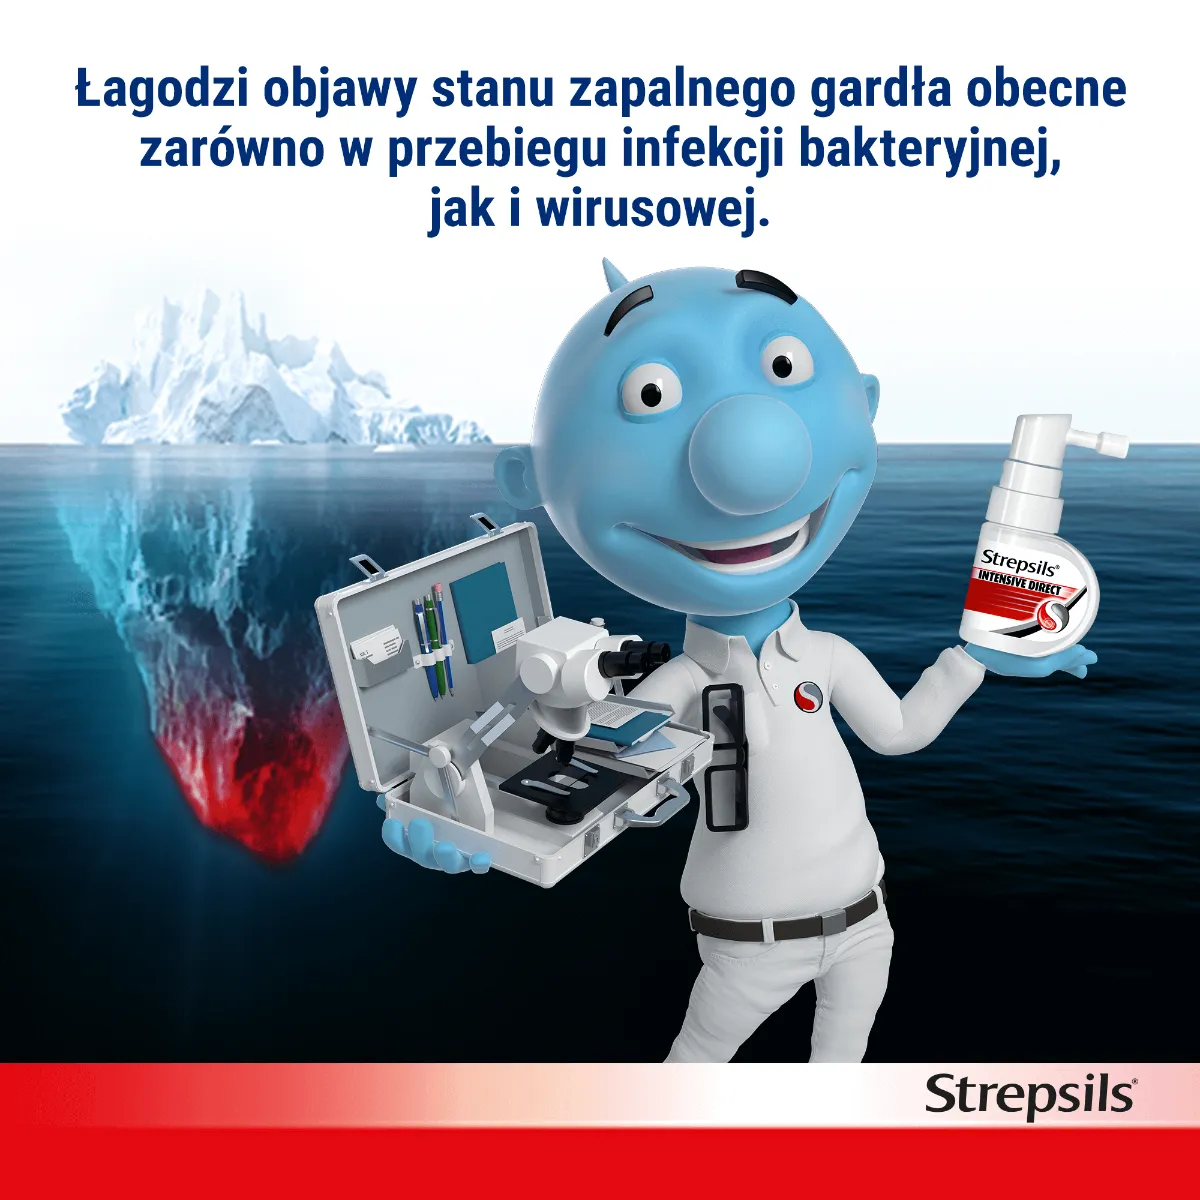 Strepsils Intensive Direct, 8,75 mg/dawkę, aerozol do stosowania w jamie ustnej, roztwór, 15 ml 